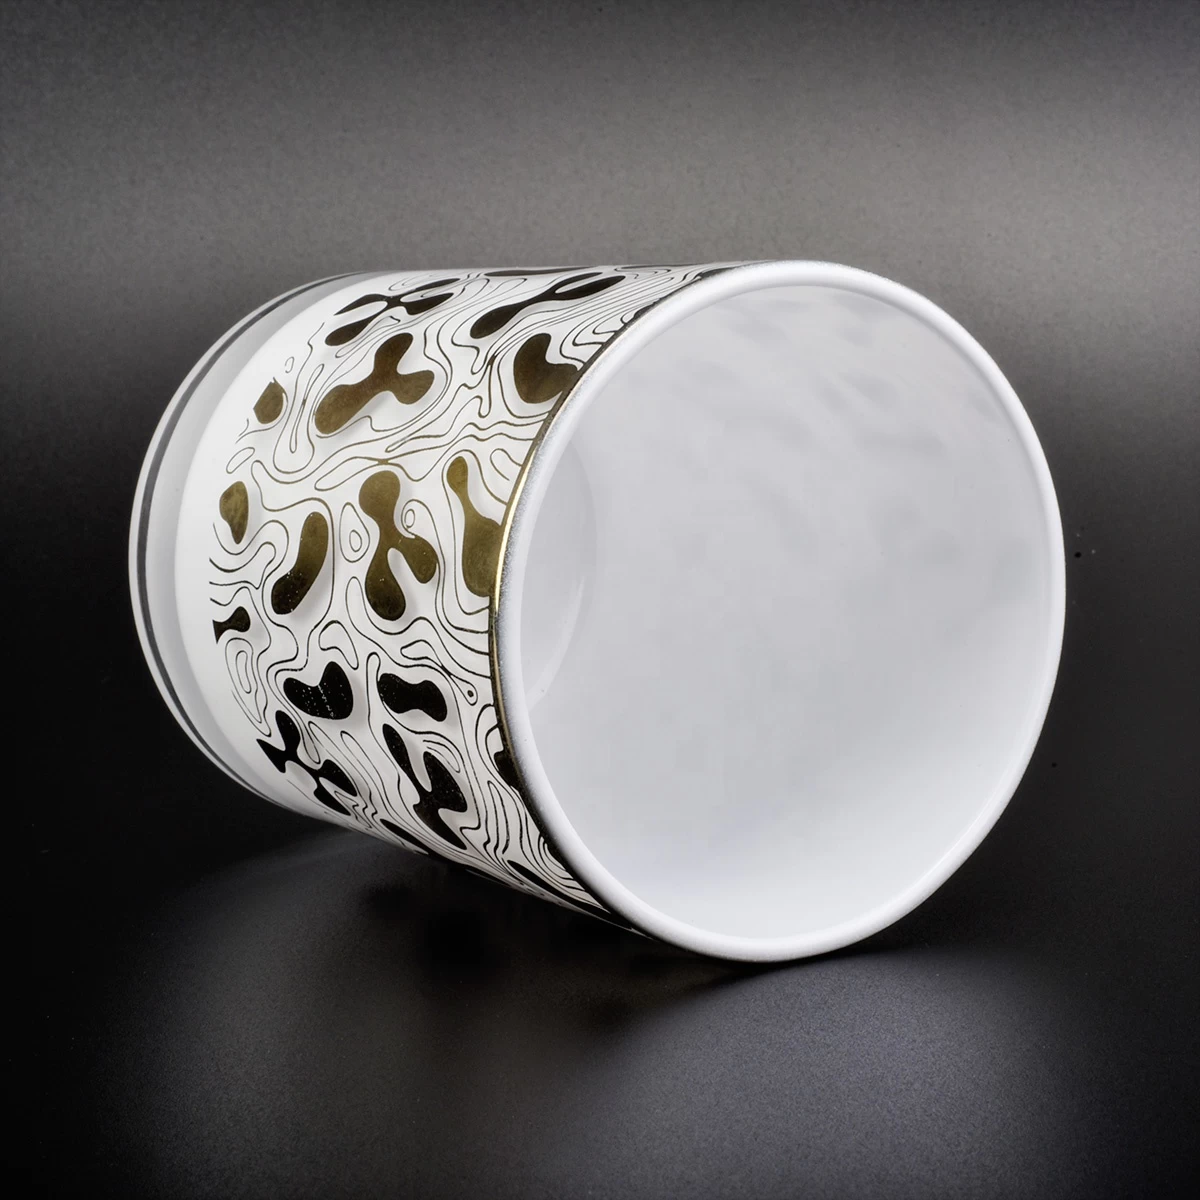 6 oz 10 oz 12 oz Supplier cylinder gold printing glass holder vessel for candle making